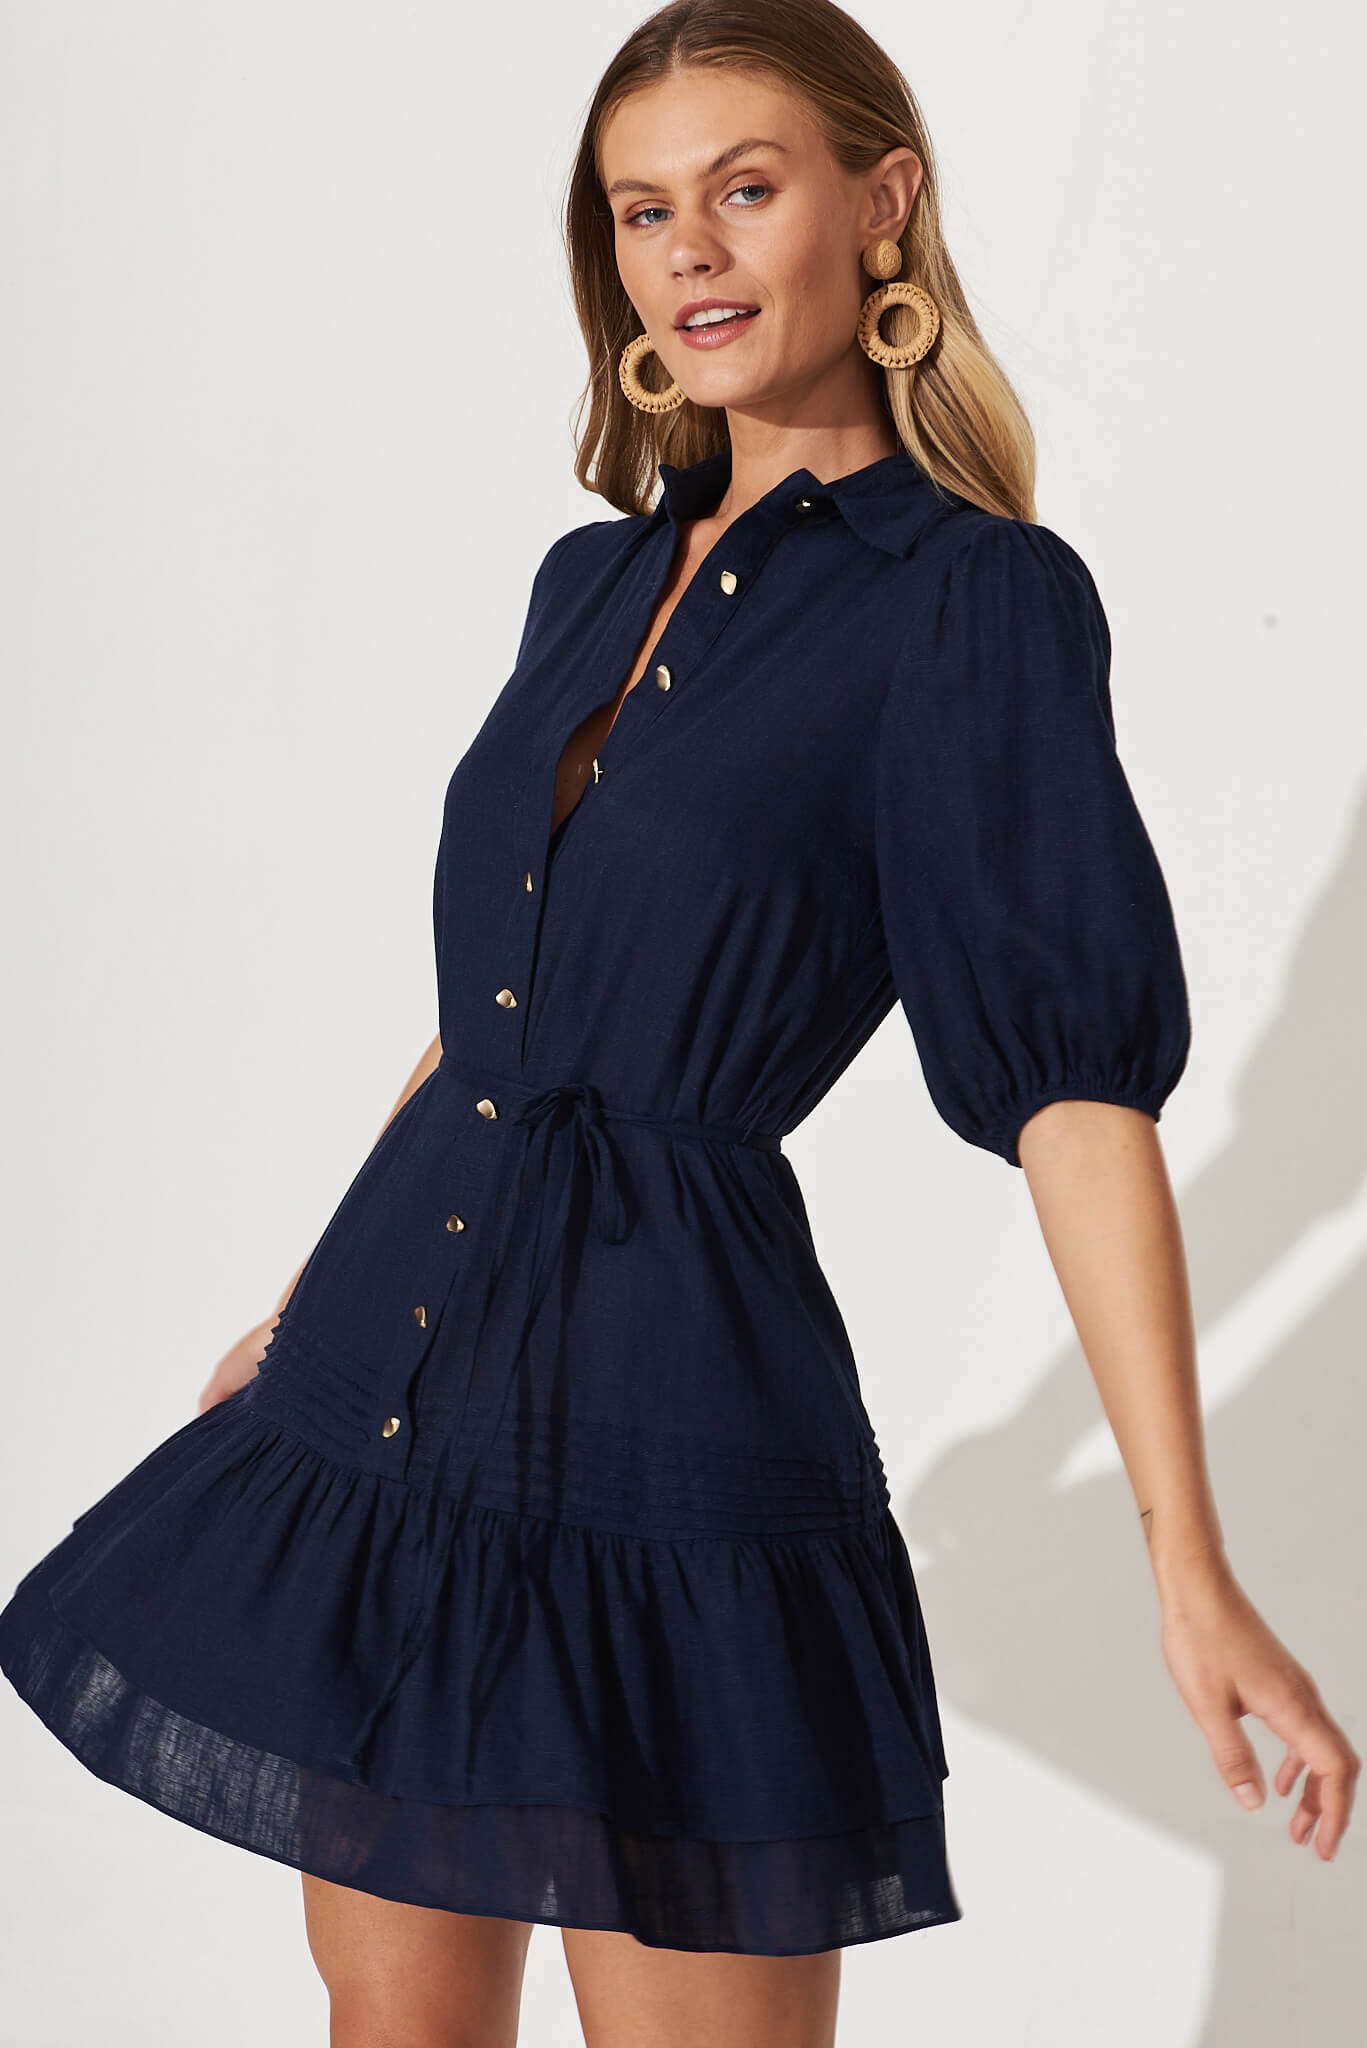 Irresistible Shirt Dress In Navy Linen Cotton Blend – St Frock